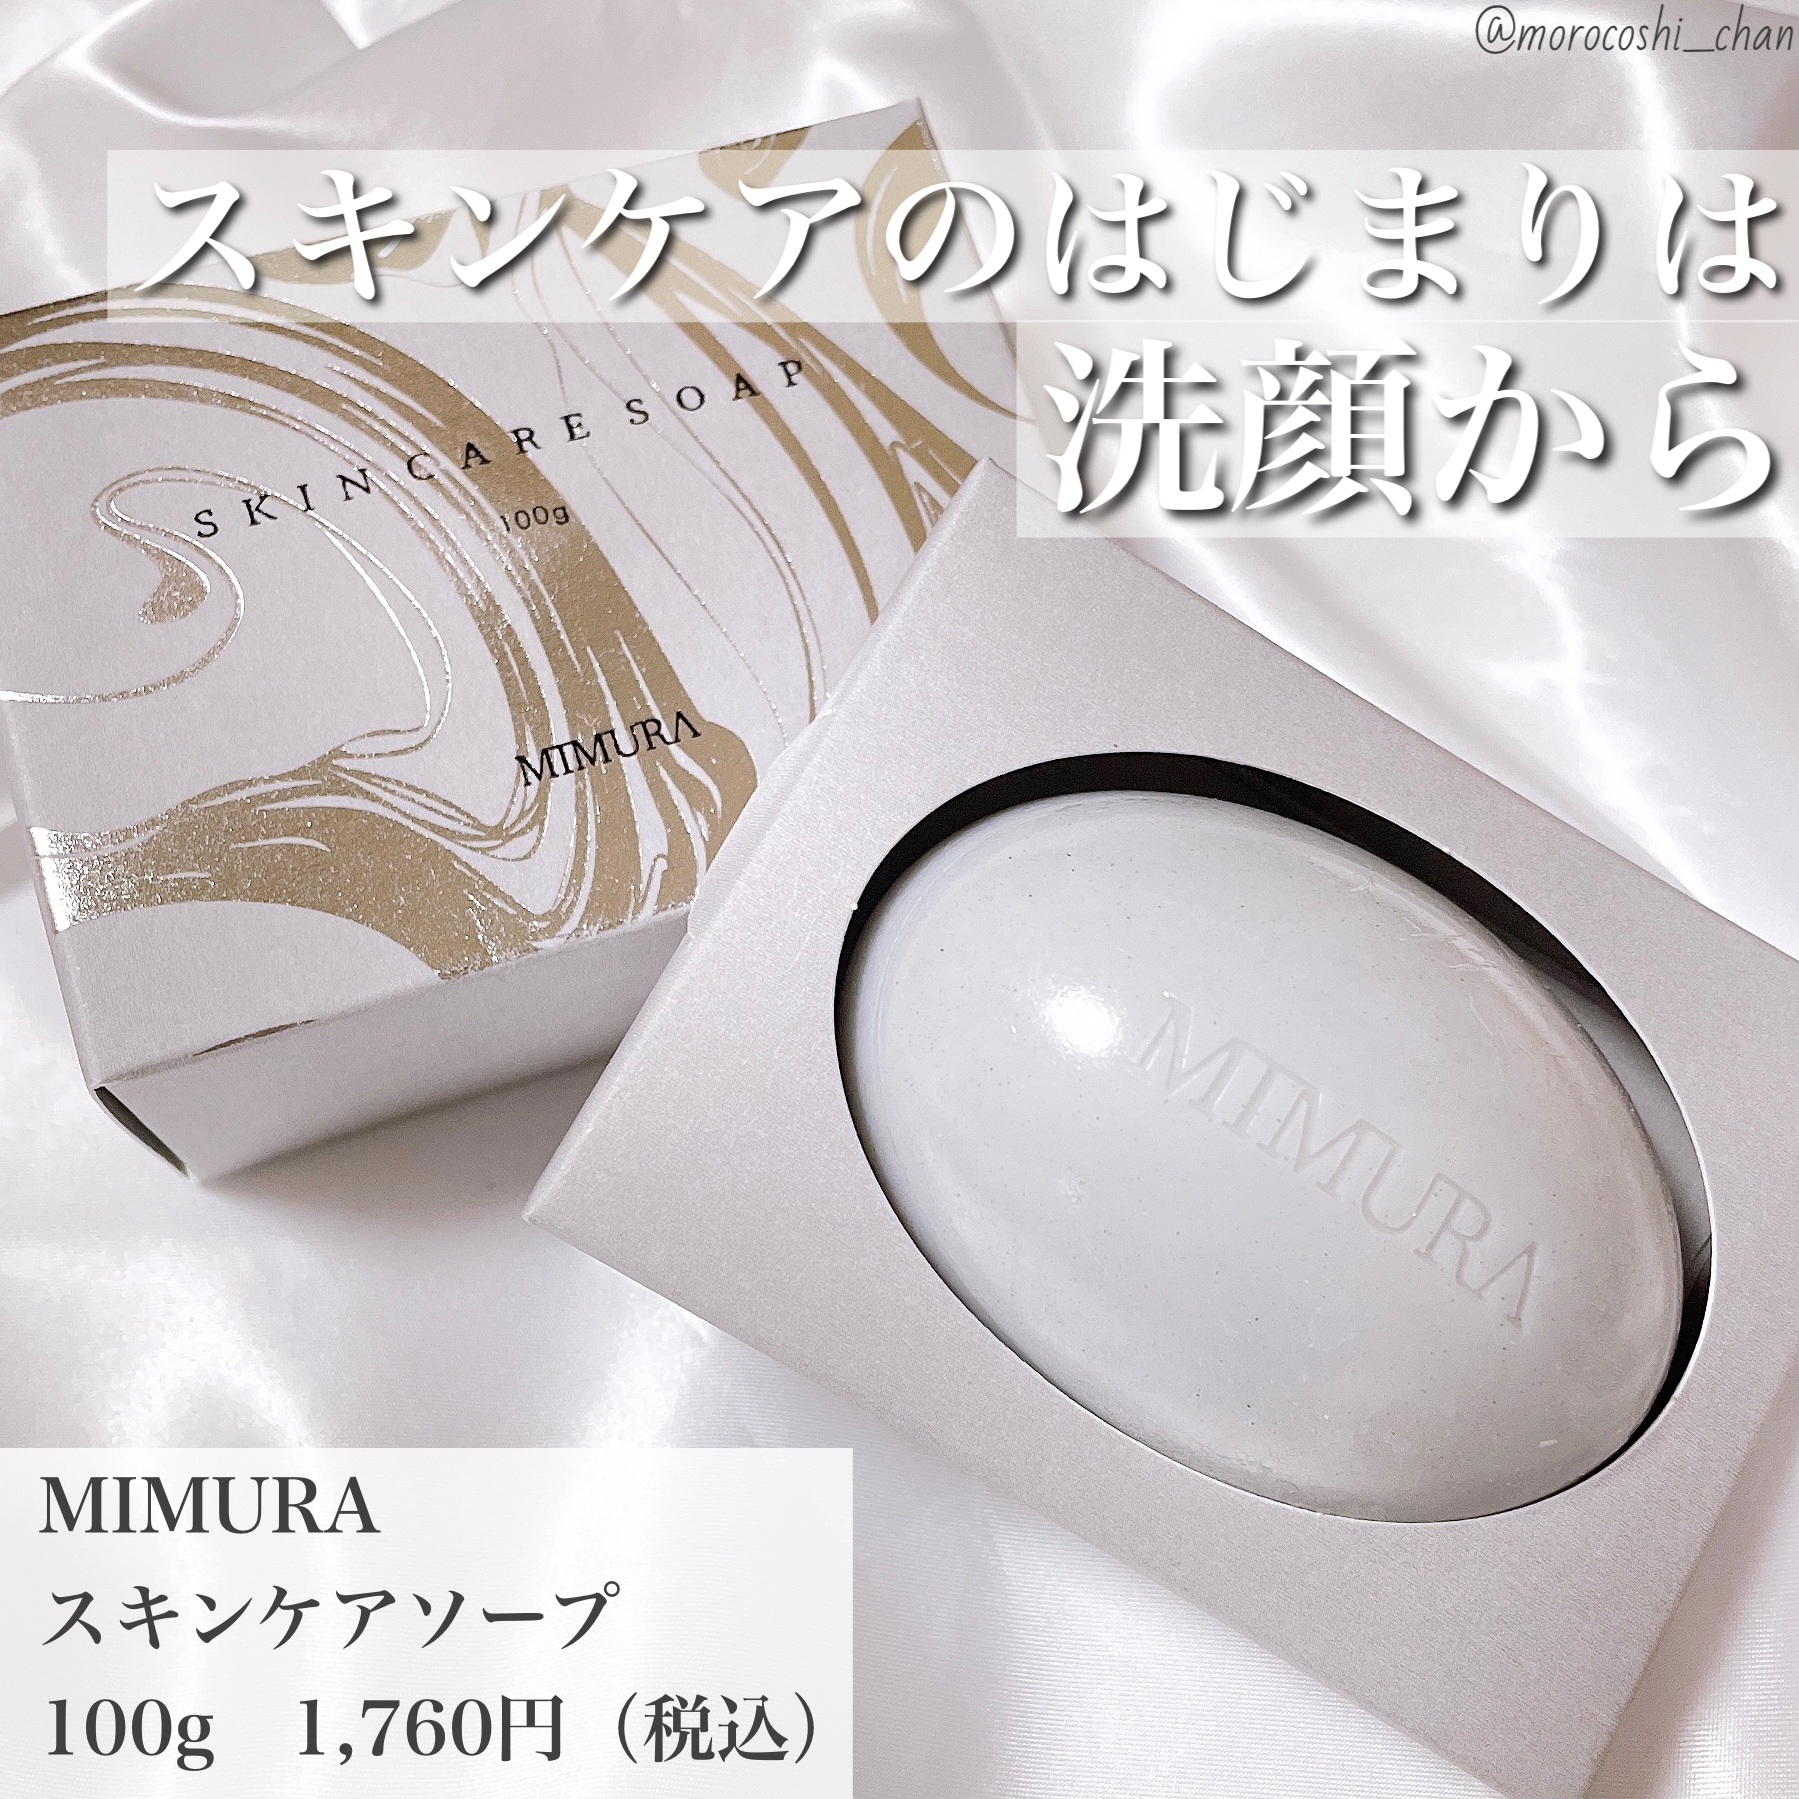 MIMURA(ミムラ)スキンケアソープを使ったもろこしちゃん🌽さんのクチコミ画像1